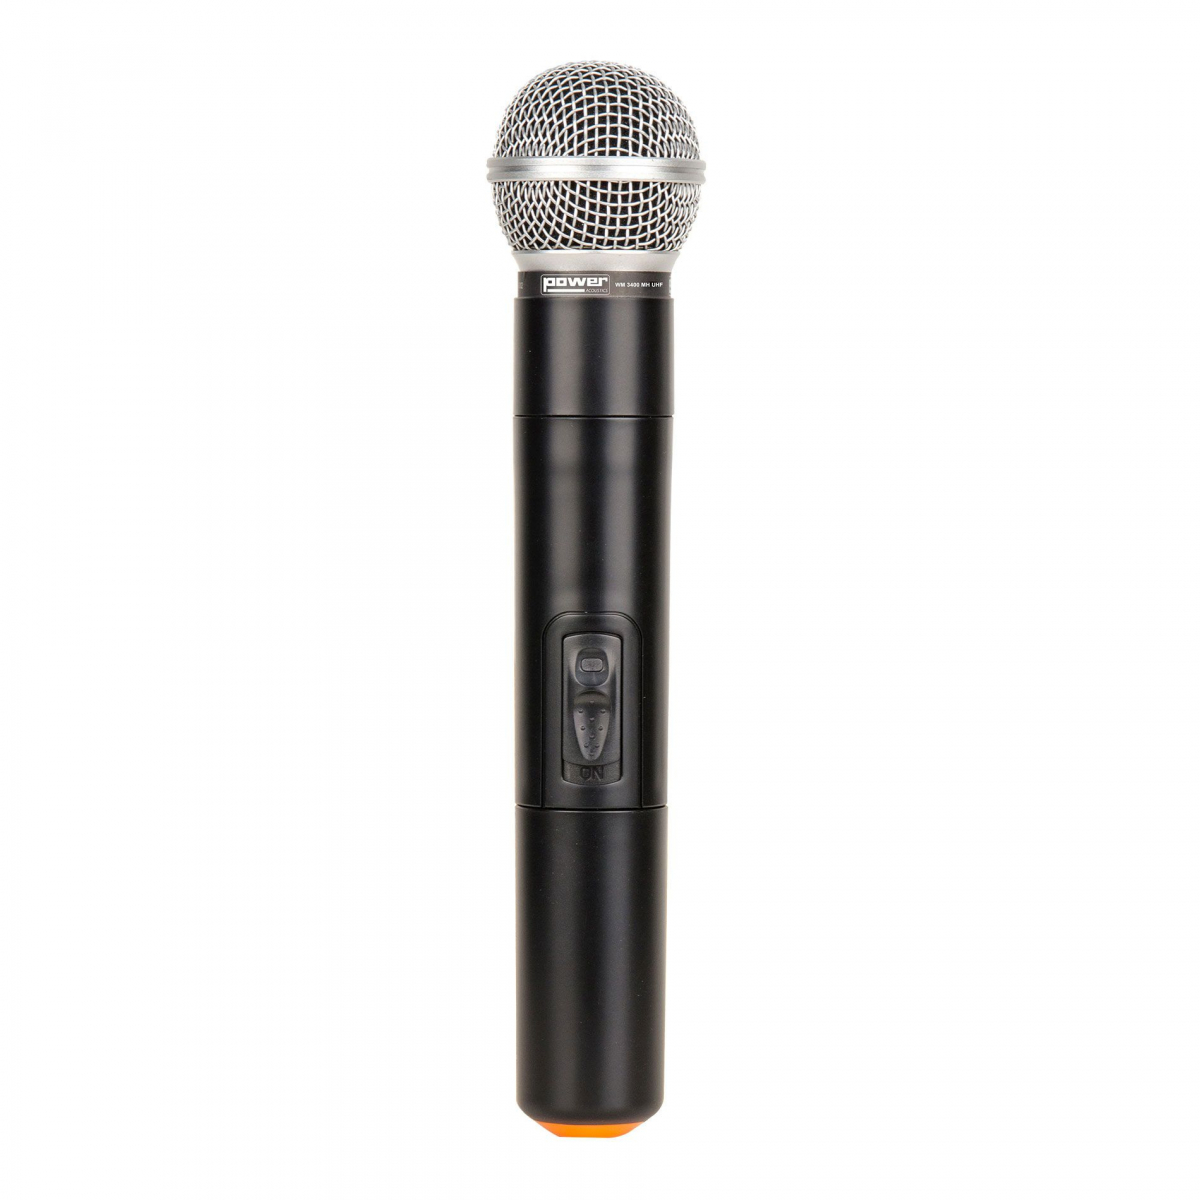 Porte voix de 20W avec microphone cravate et lecteur multimédia